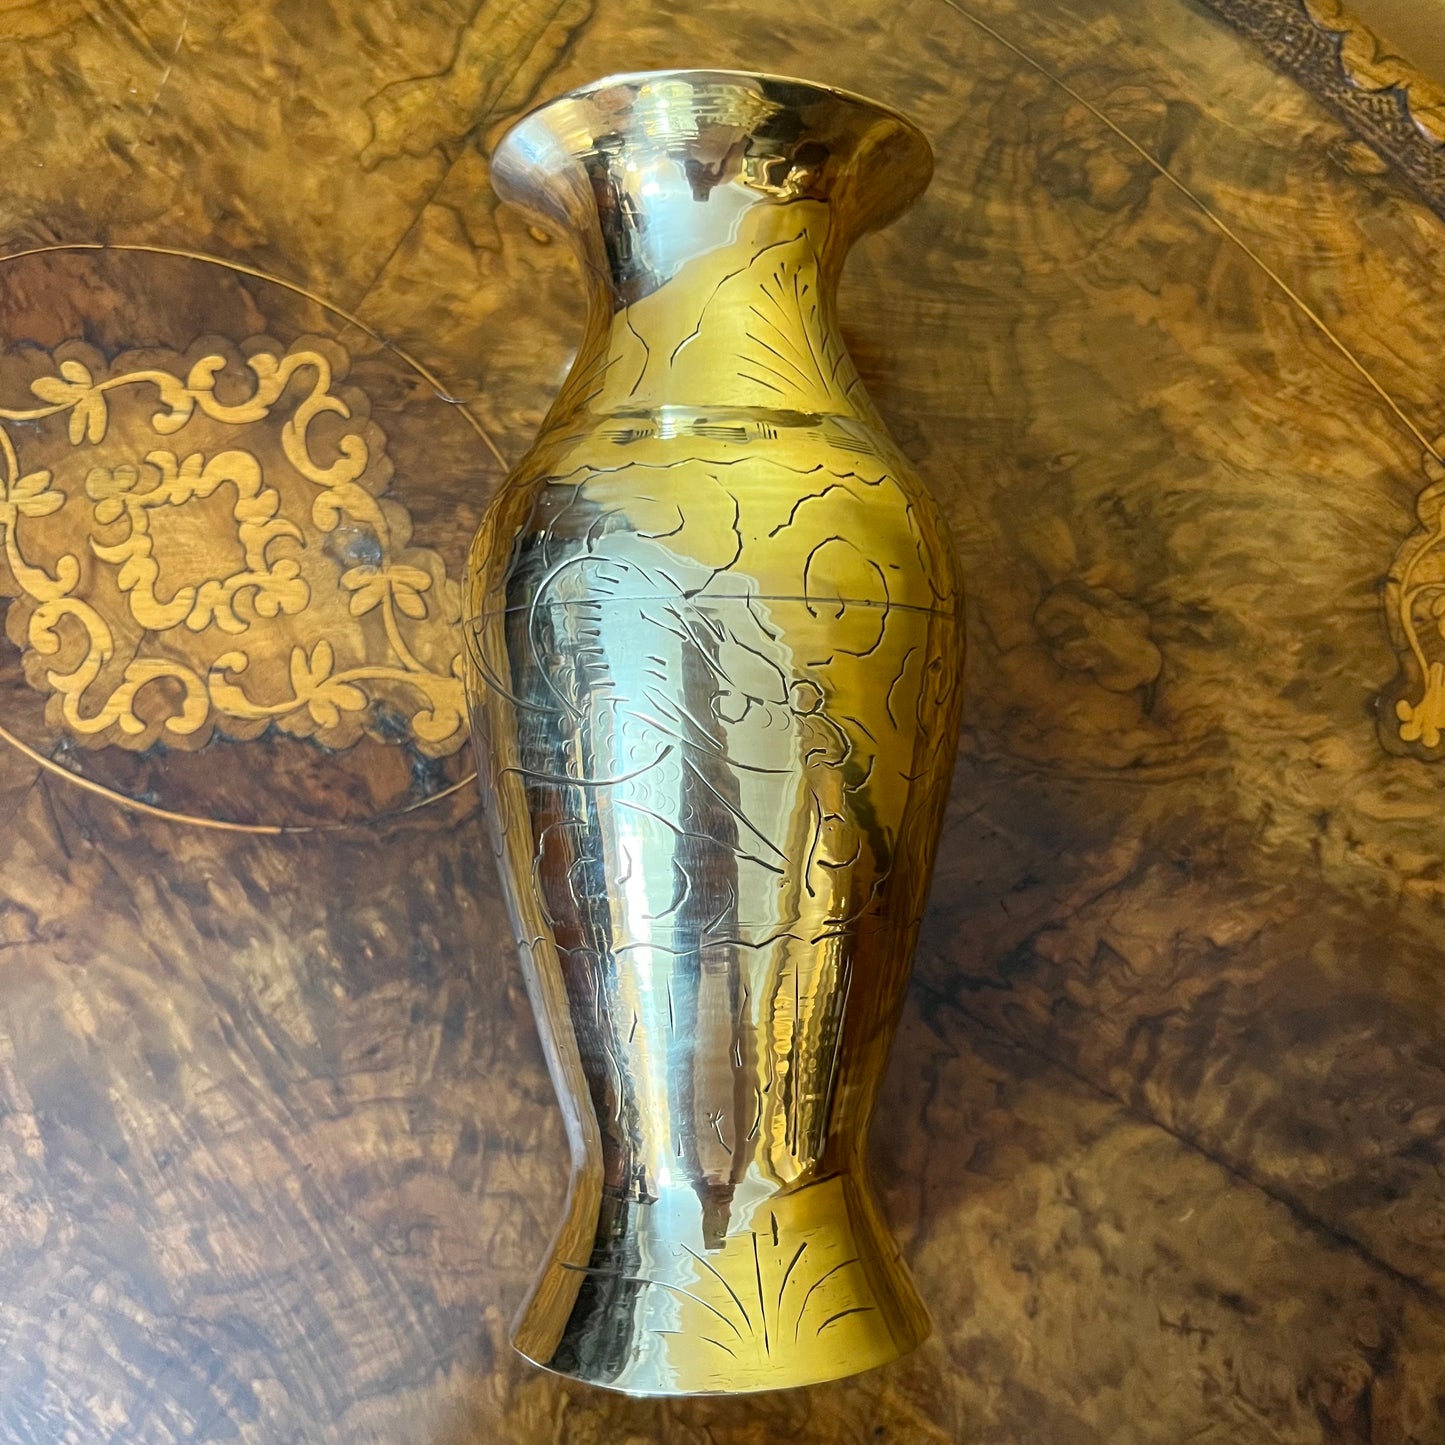 Vintage Brass Engraved Vase